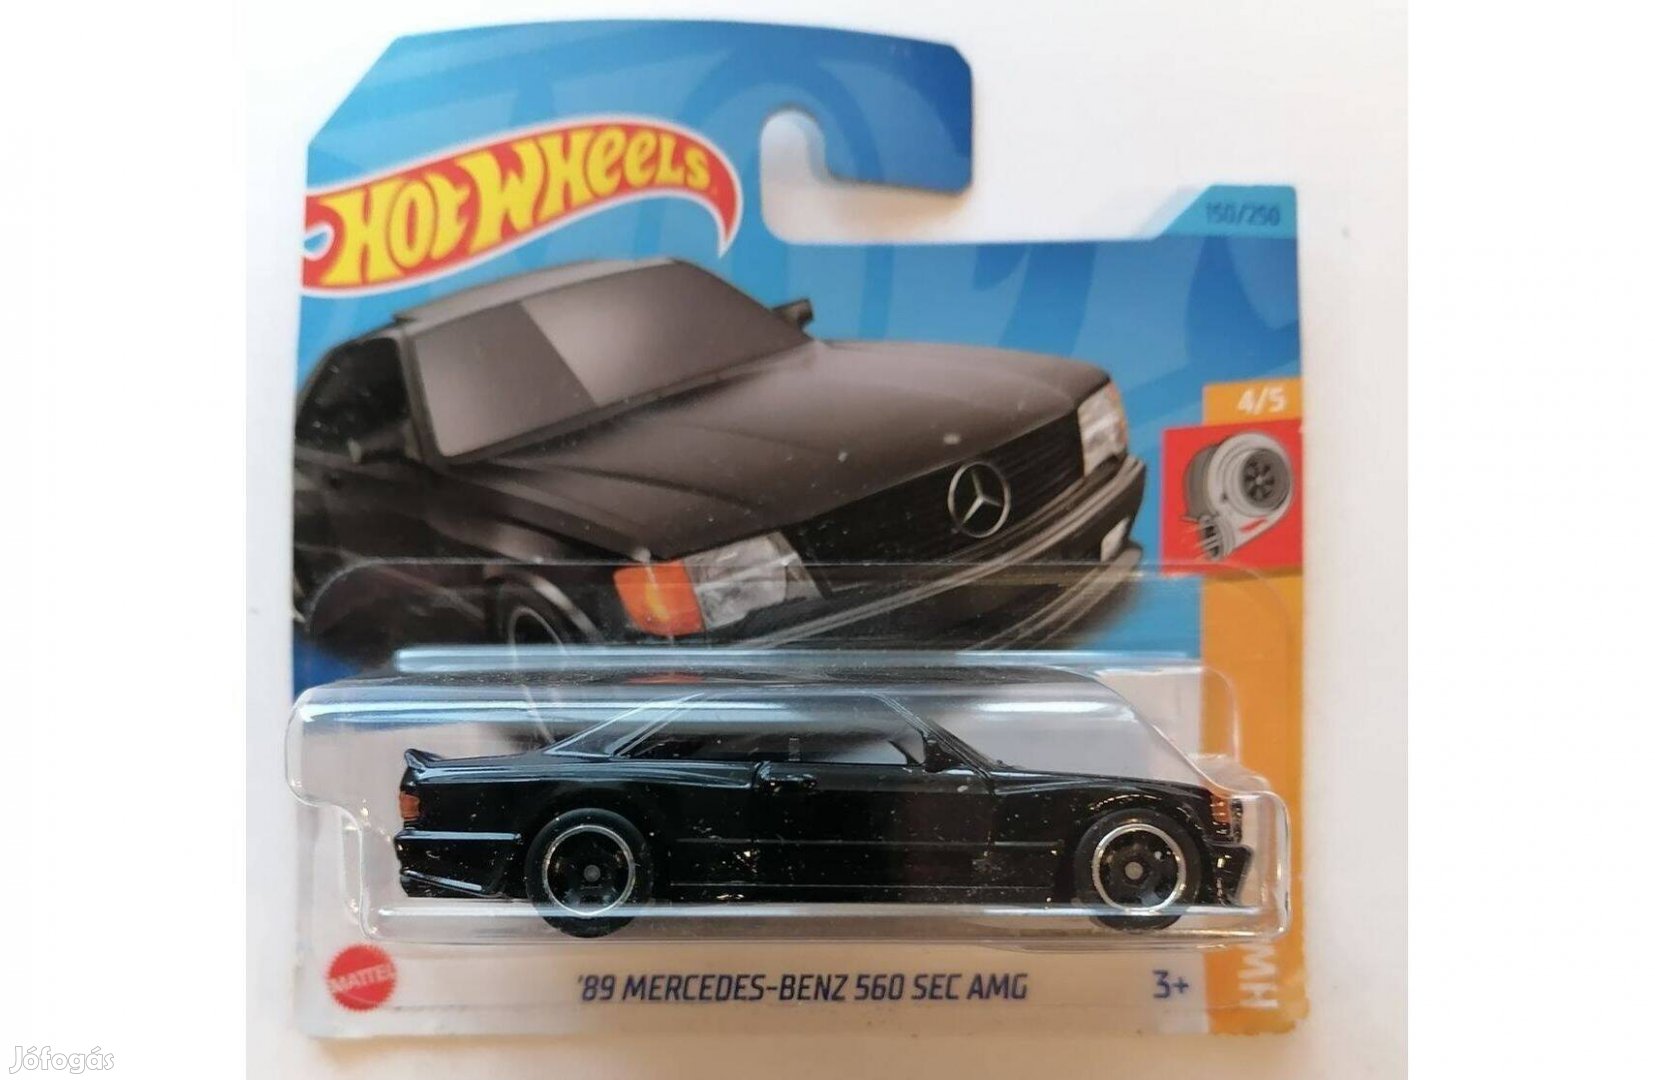 Hot Wheels '89 Mercedes Benz 560 SEC AMG black